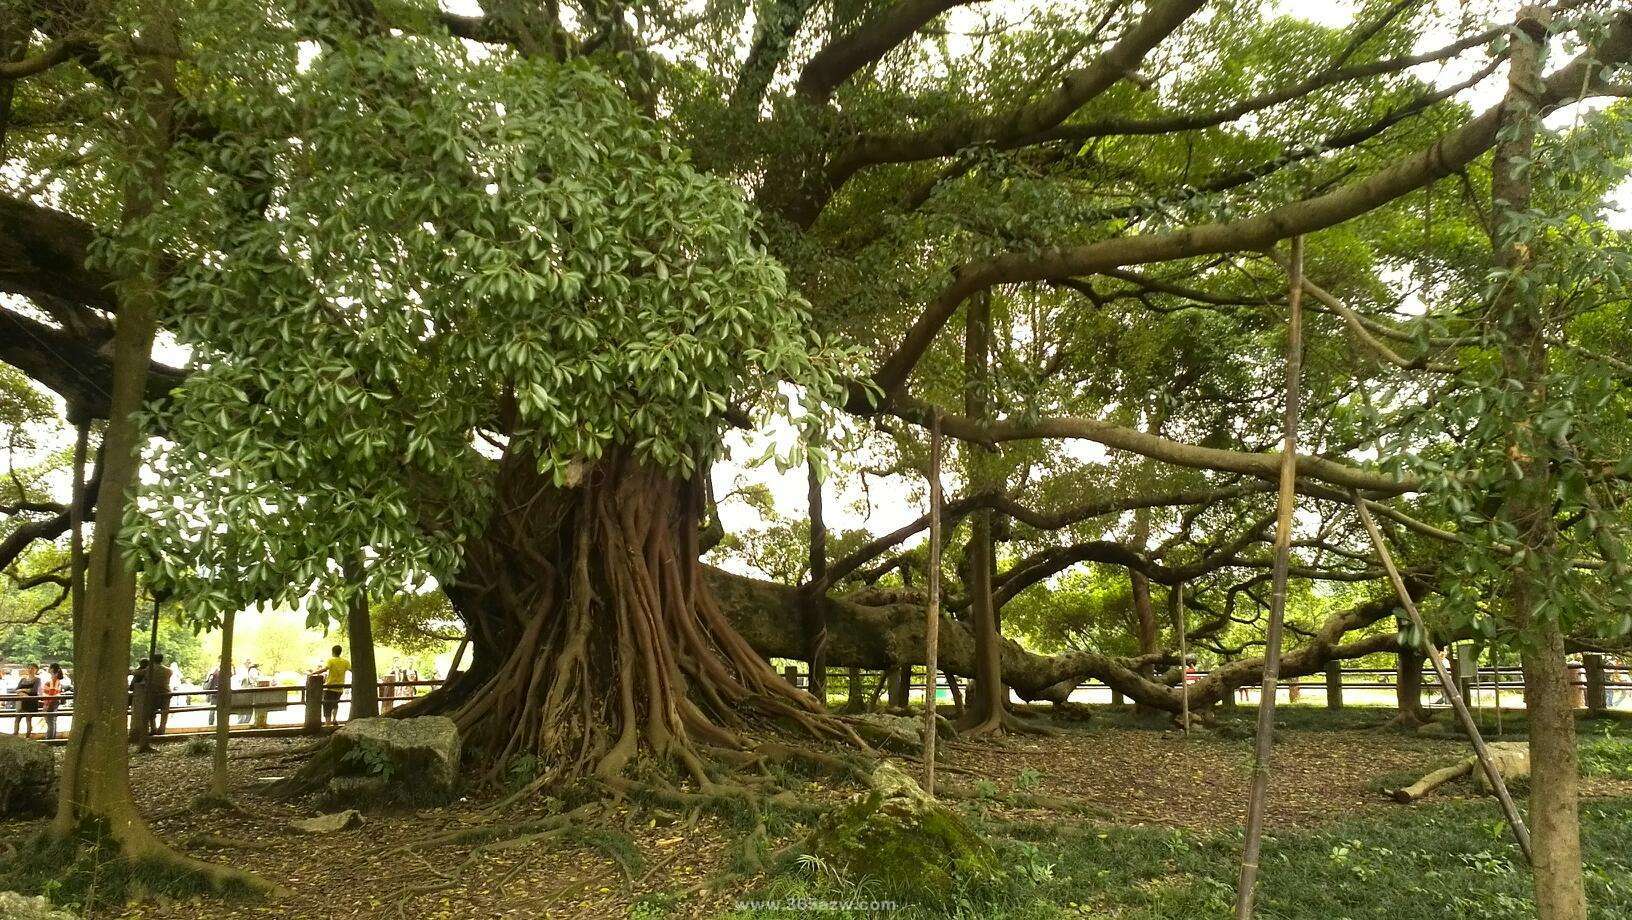 【携程攻略】阳朔大榕树景点,这棵大榕树是我见过的最大最壮观的大树，不但有1400多年的历史，而且…